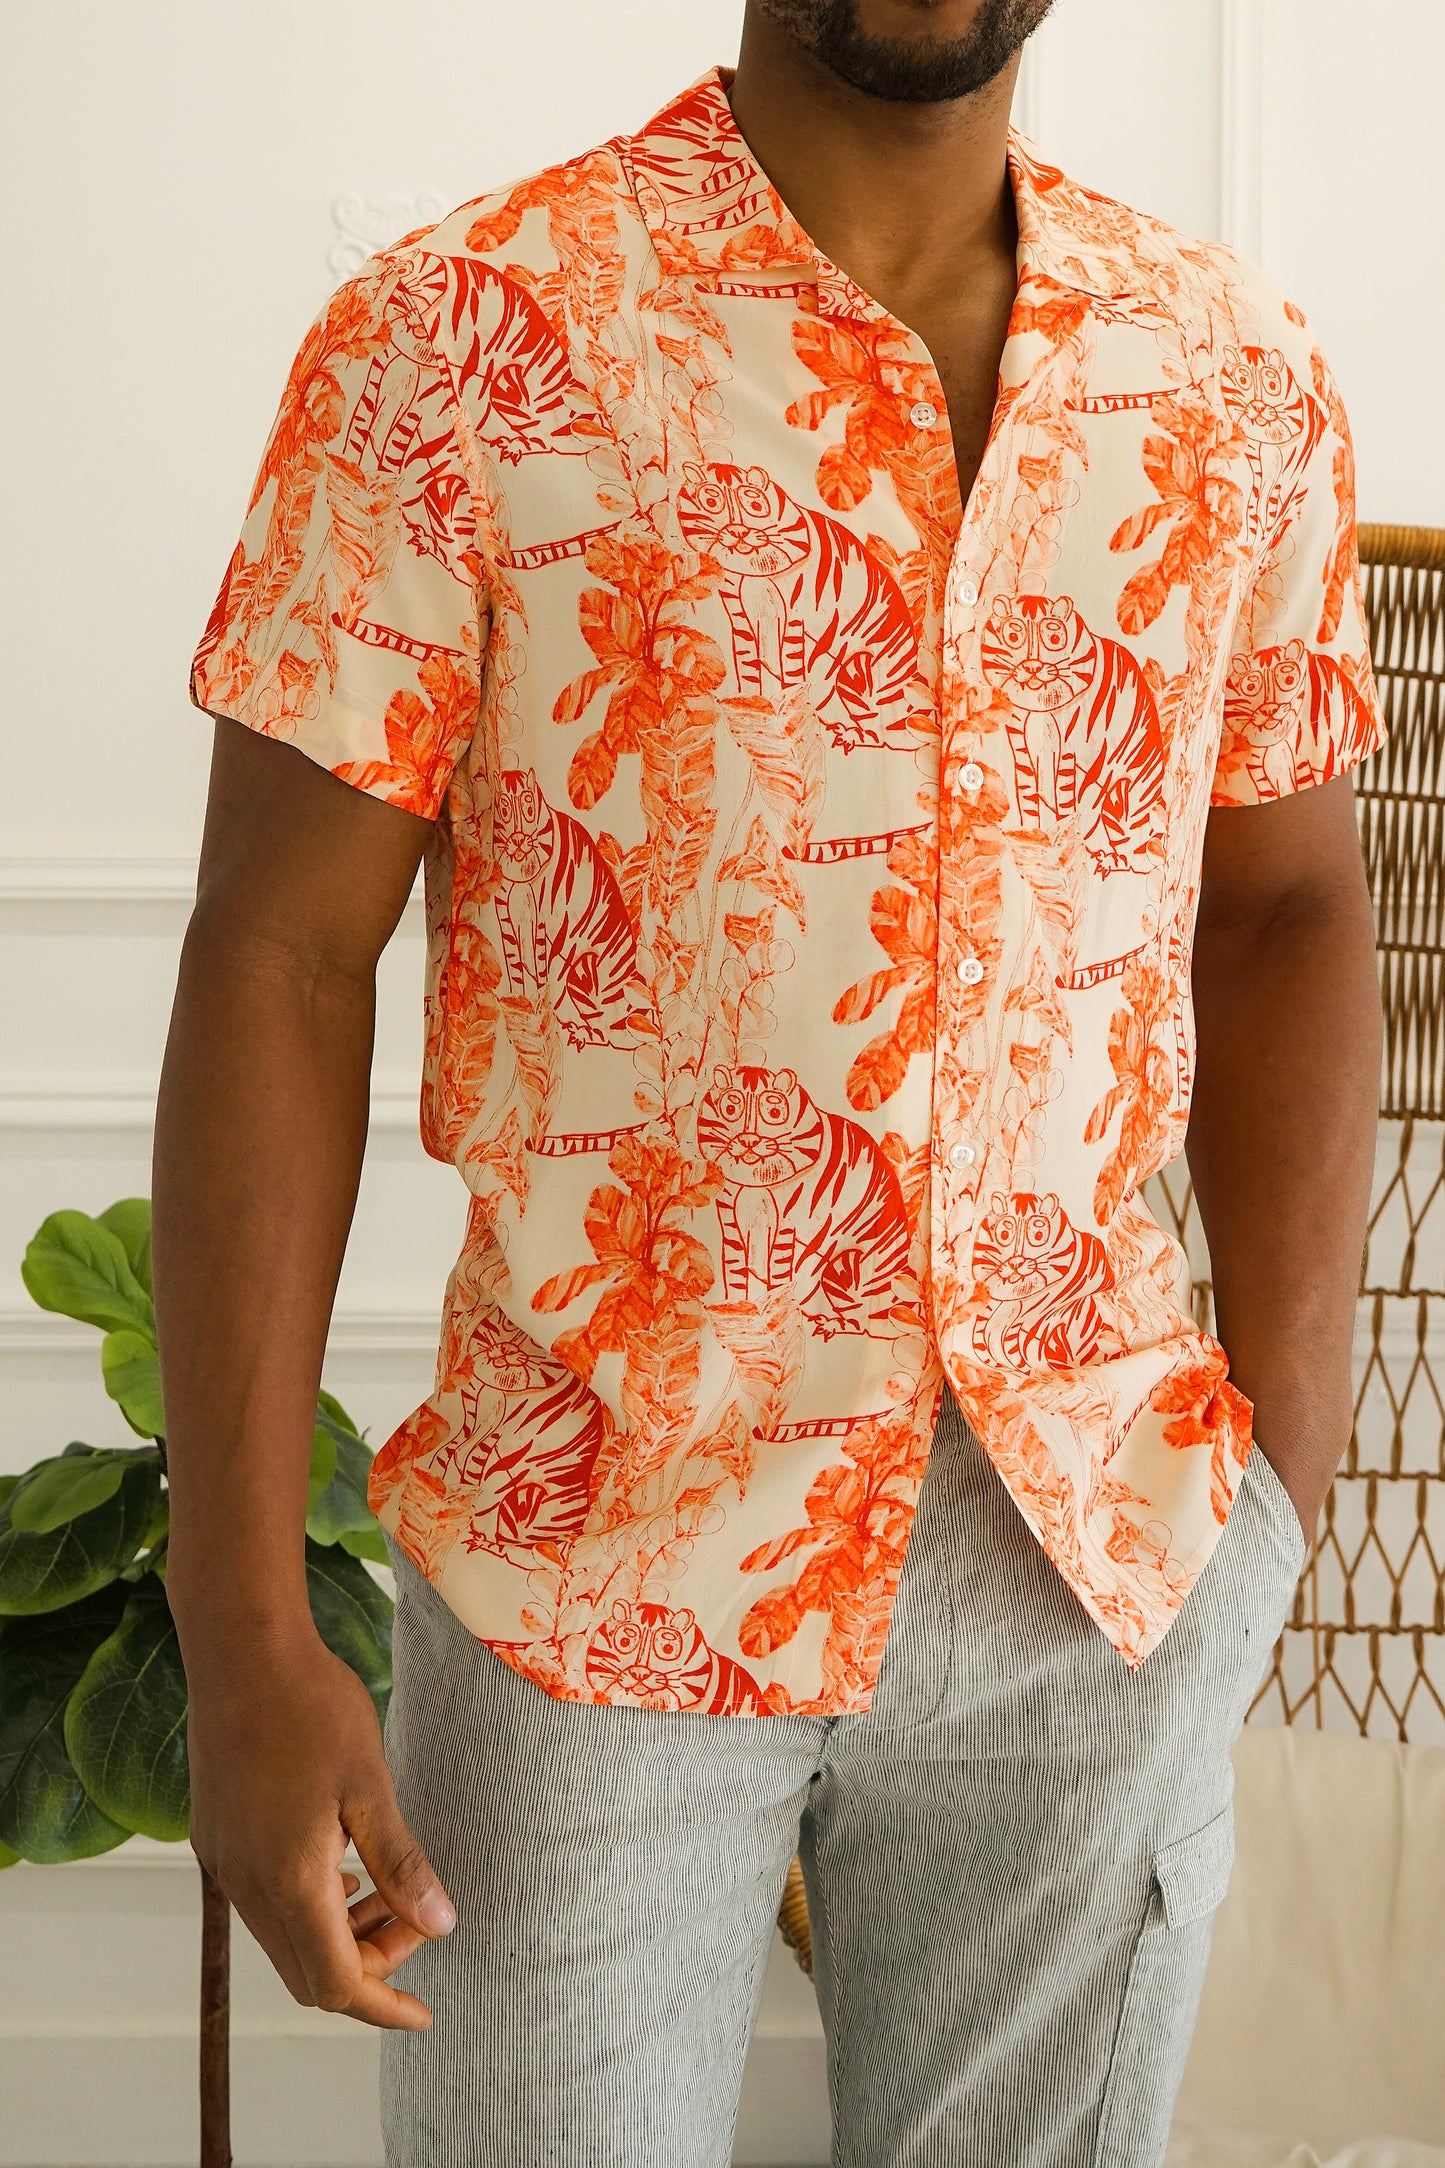 Rosseau Orange Tigers Printed Shirt